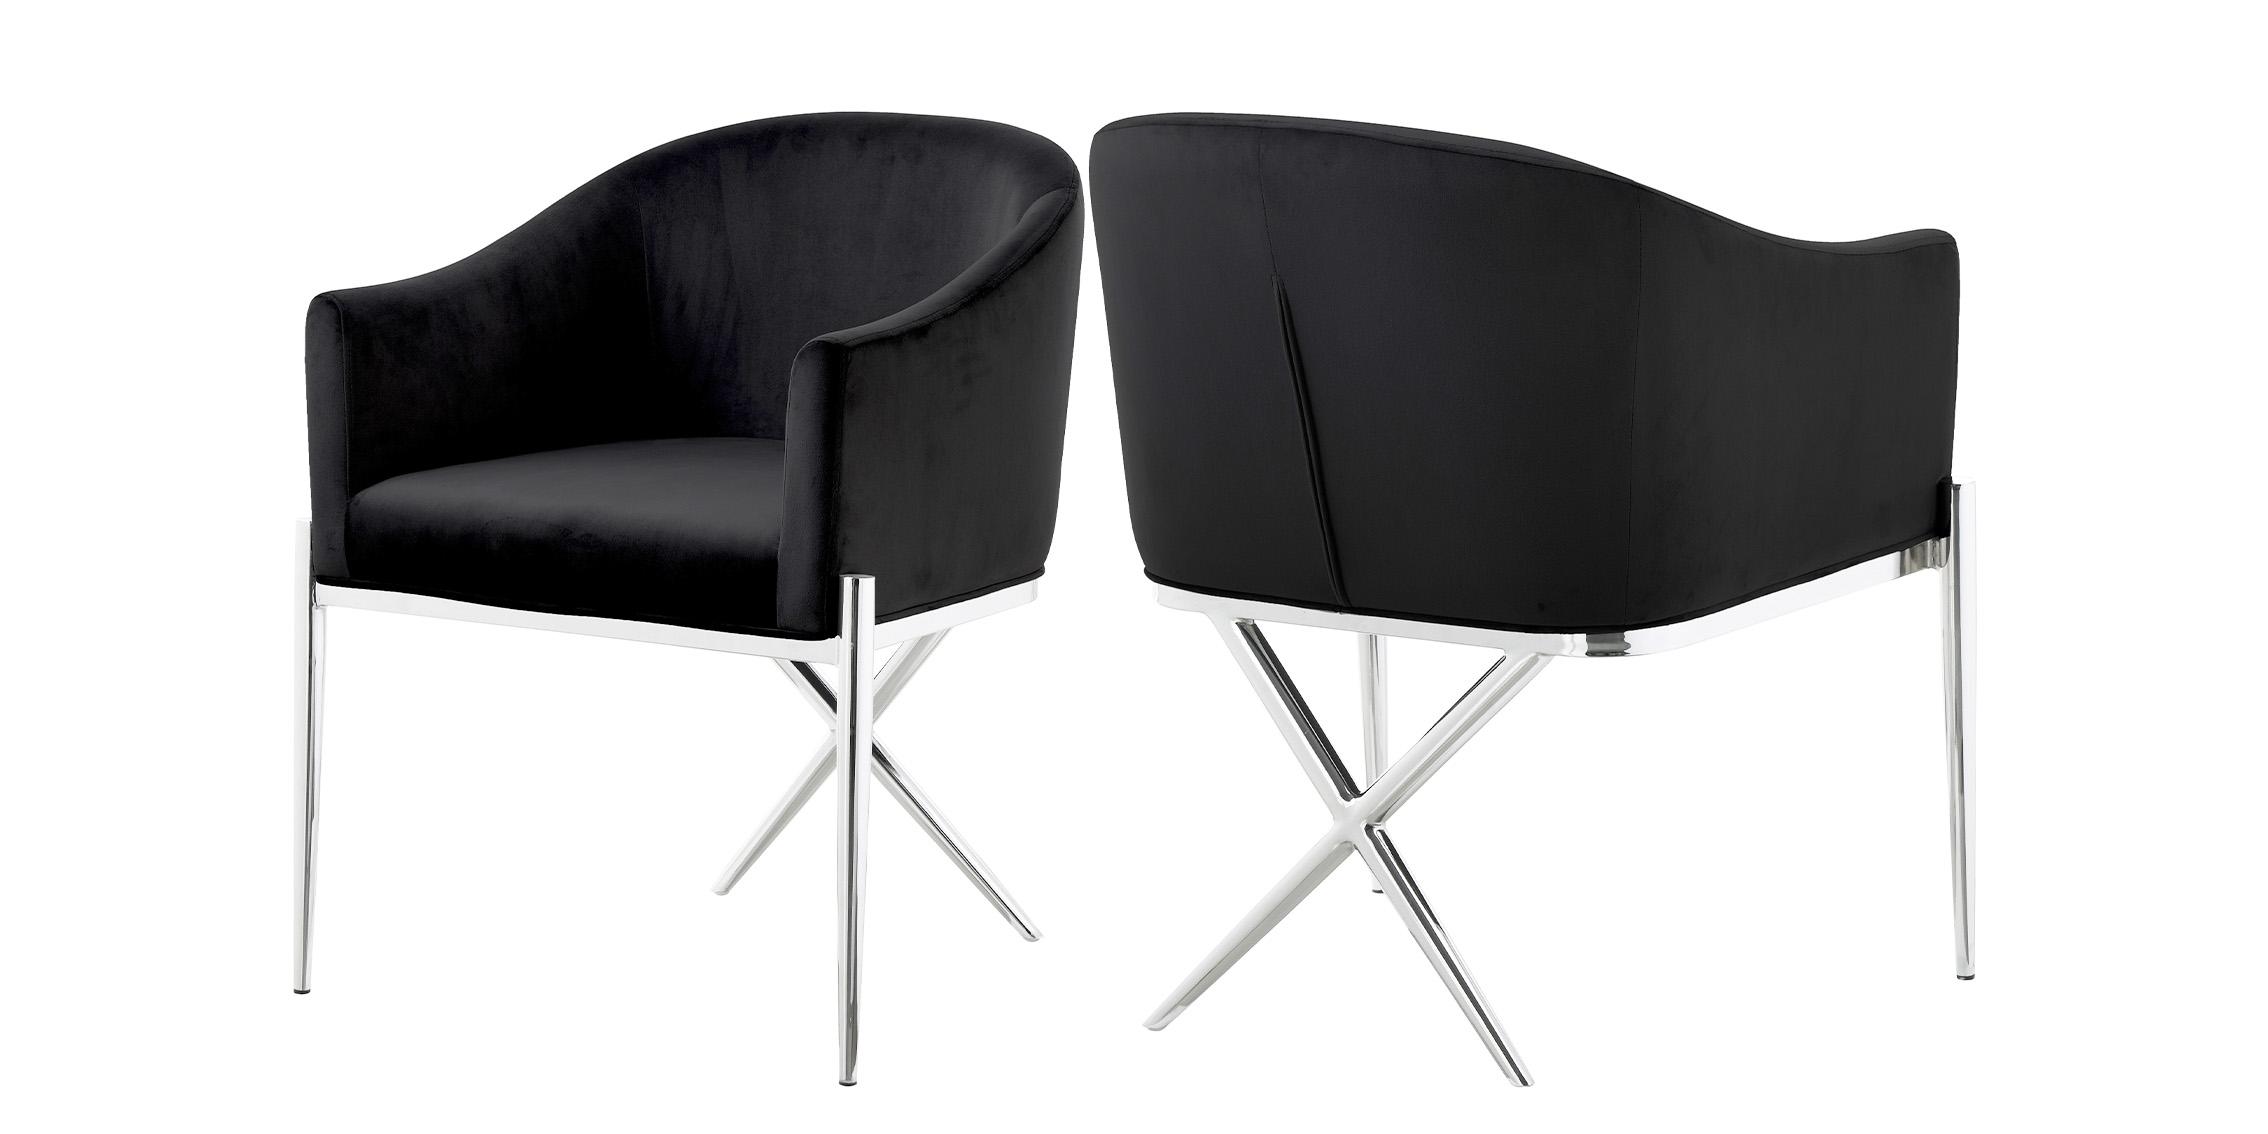 

    
Black Velvet Dining Chair Set 2Pcs XAVIER 762Black Meridian Contemporary Modern
